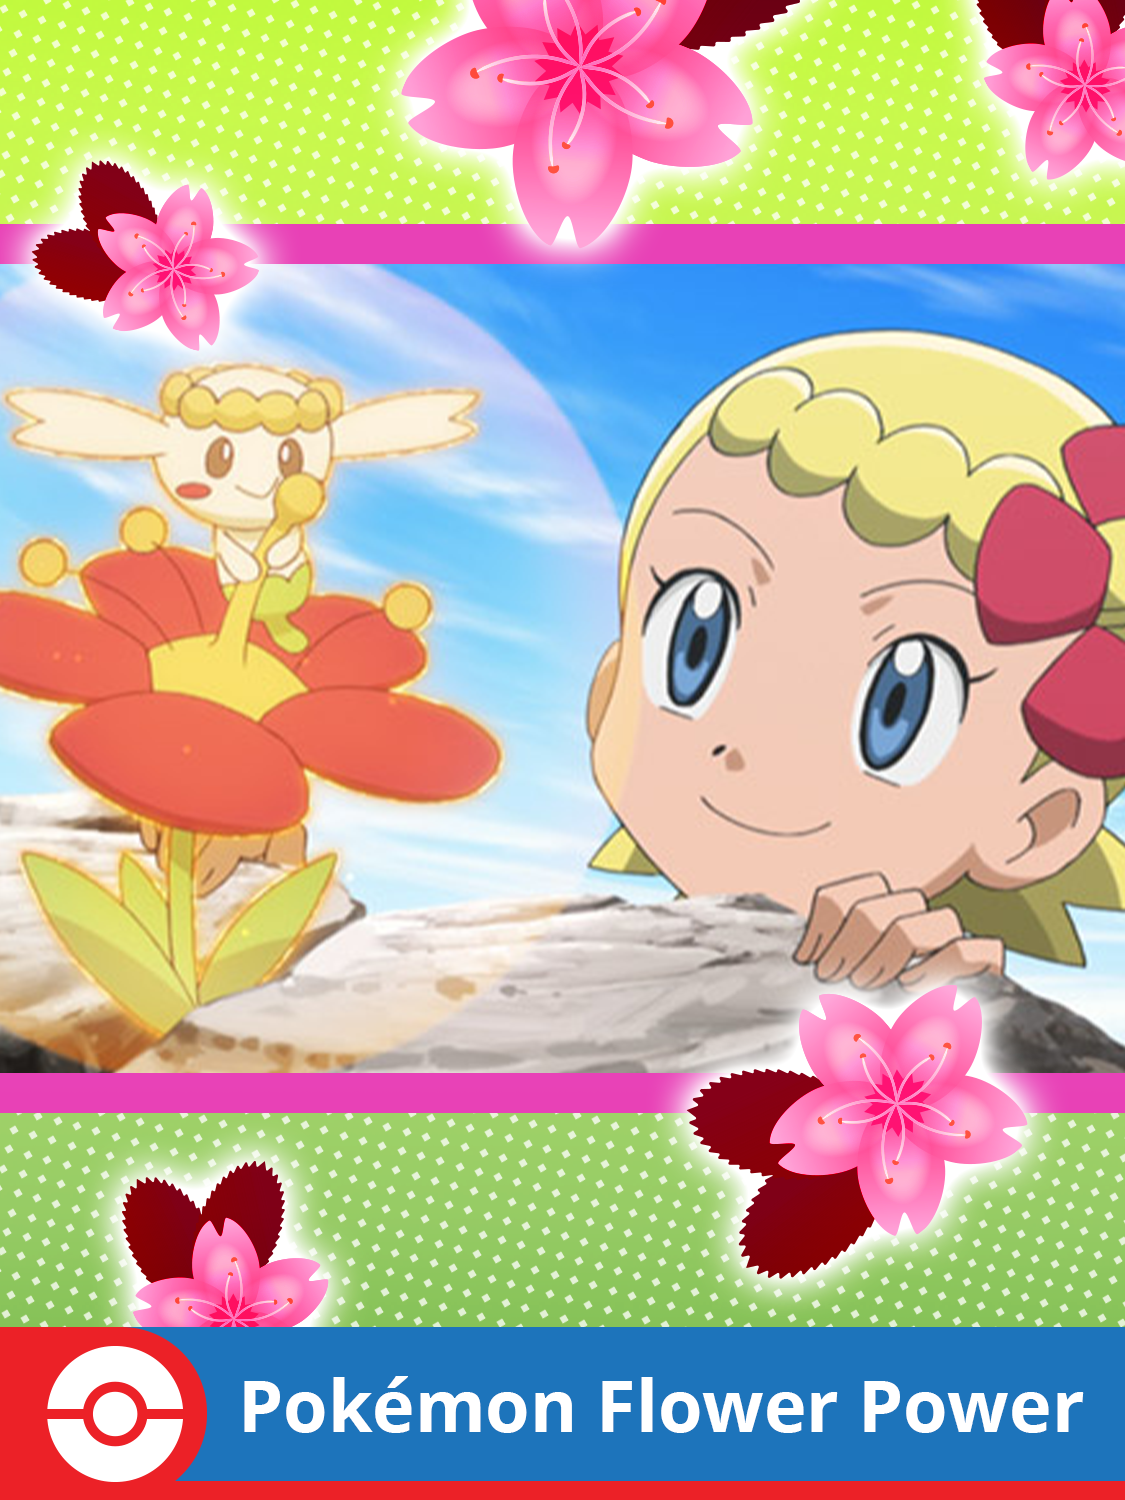 Pokémon Flower Power